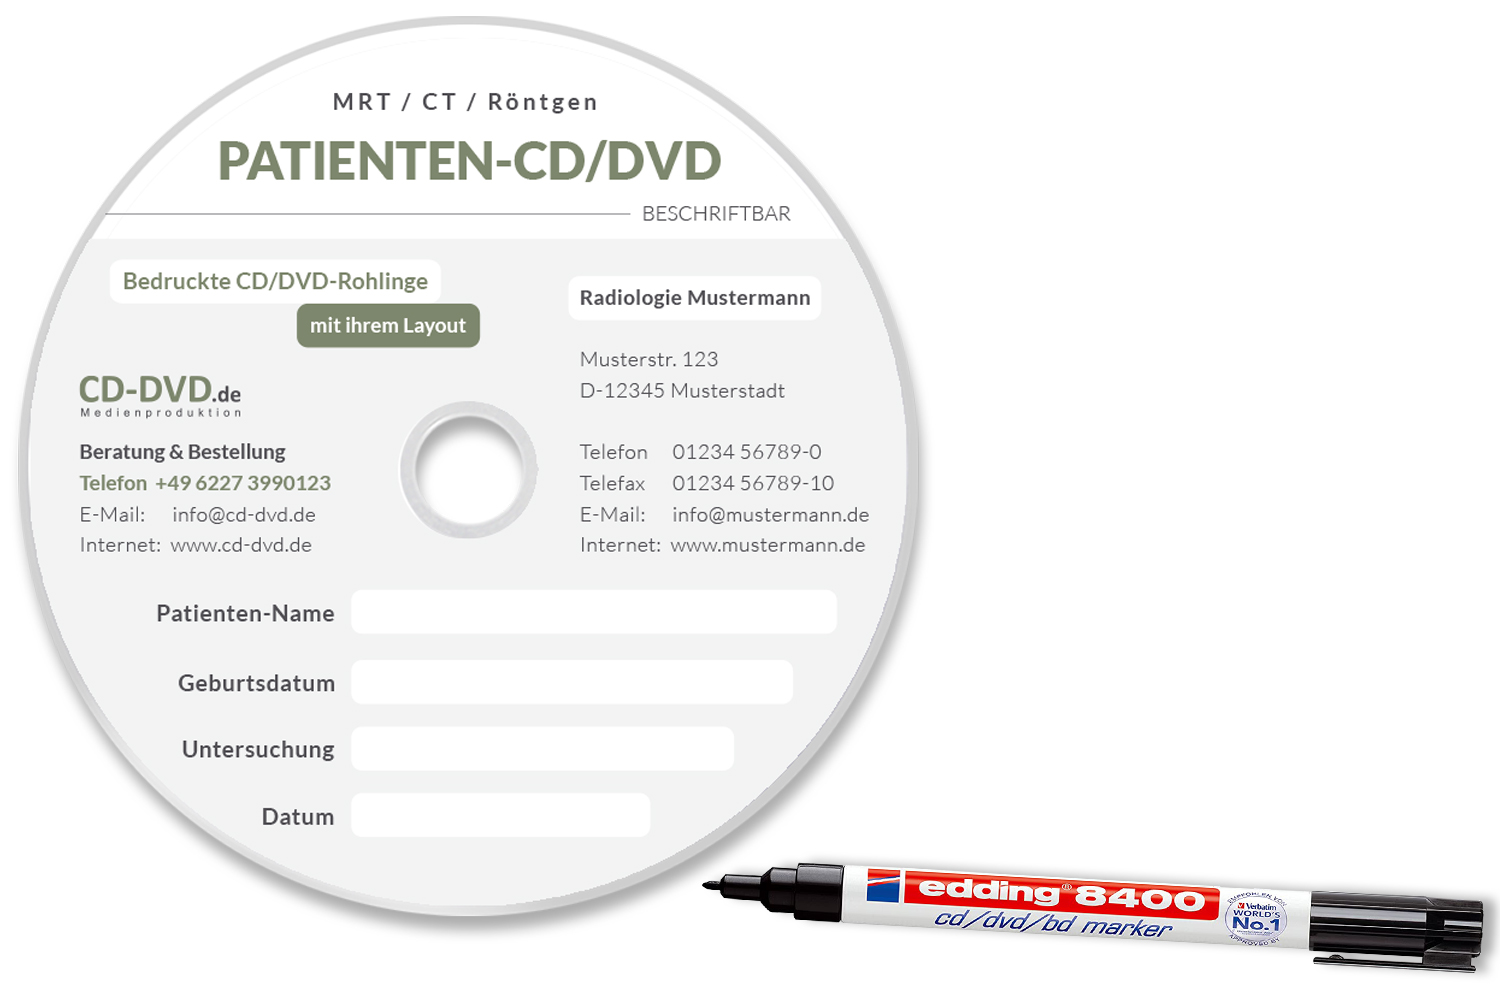 CD-DVD Ärzte und Kliniken Patienten-CD Radiologie Stift